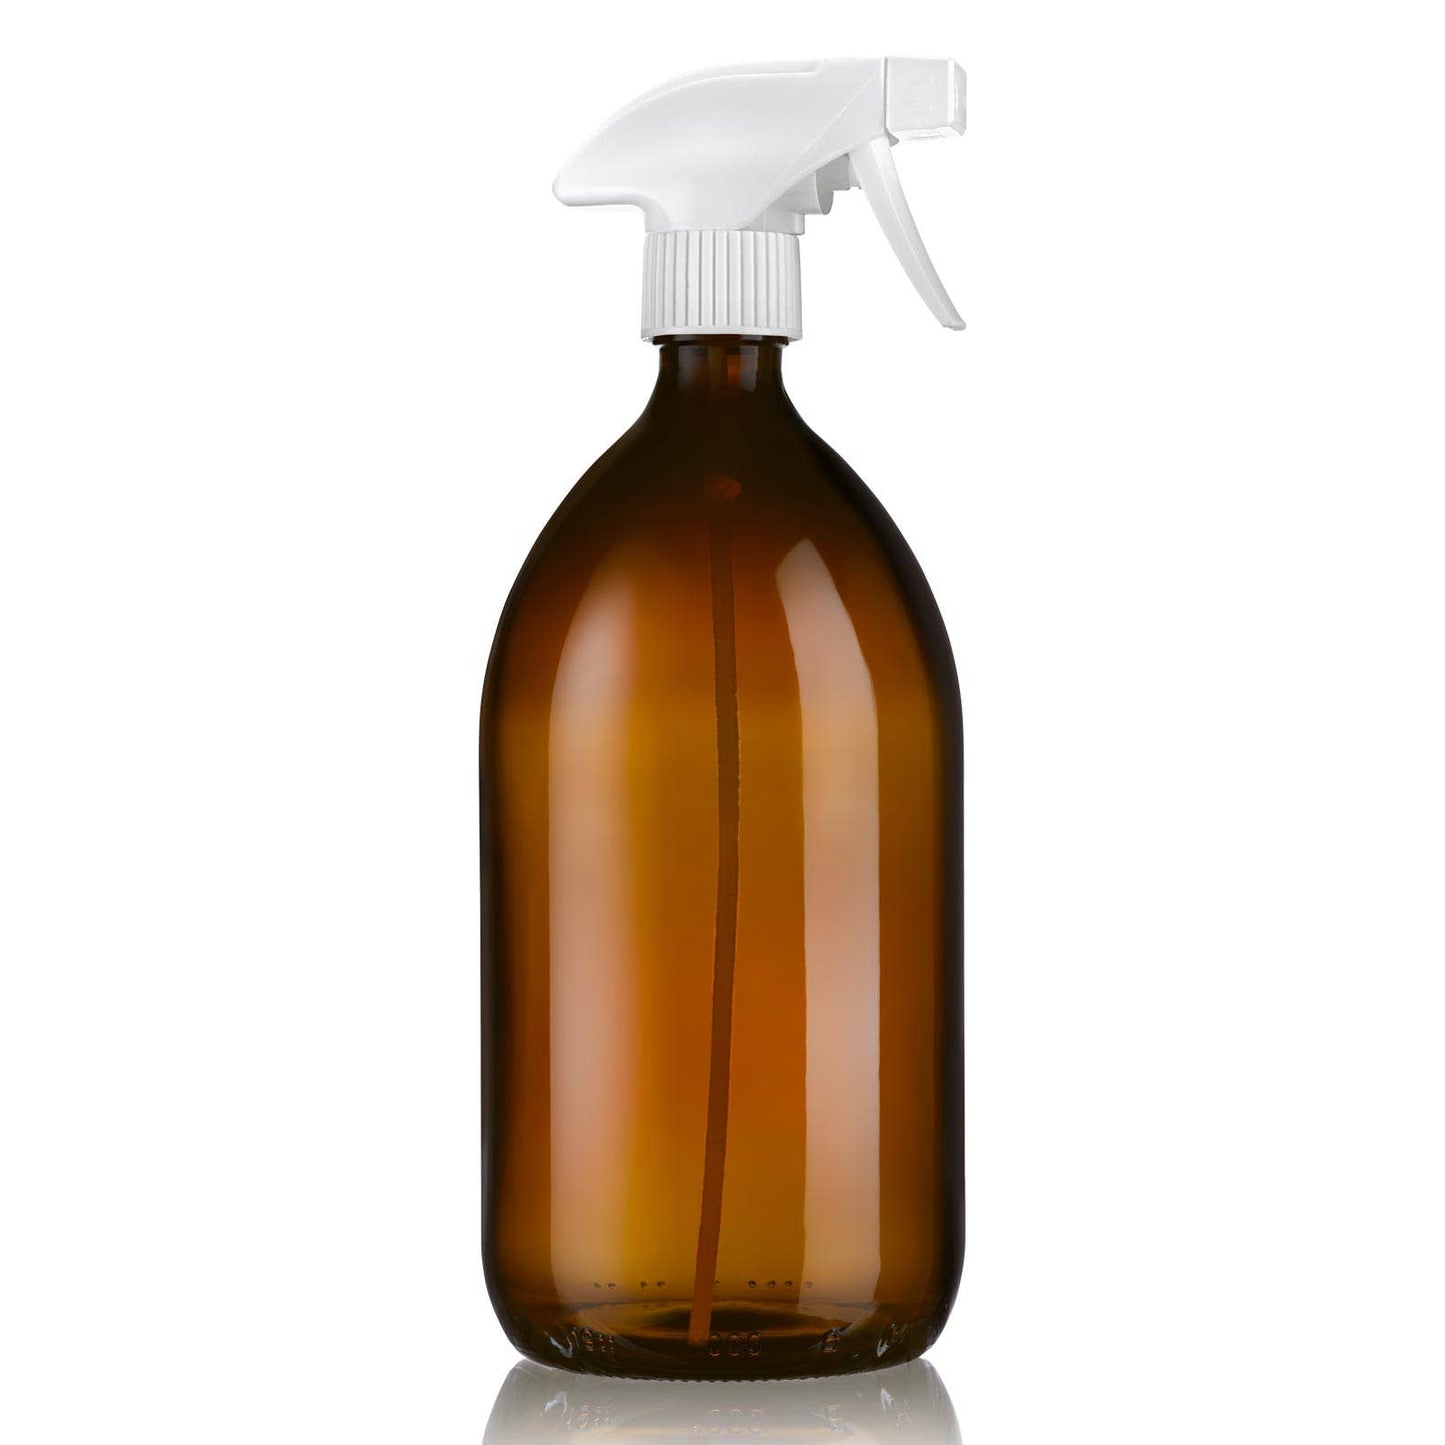 Refillable amber glass spray bottle